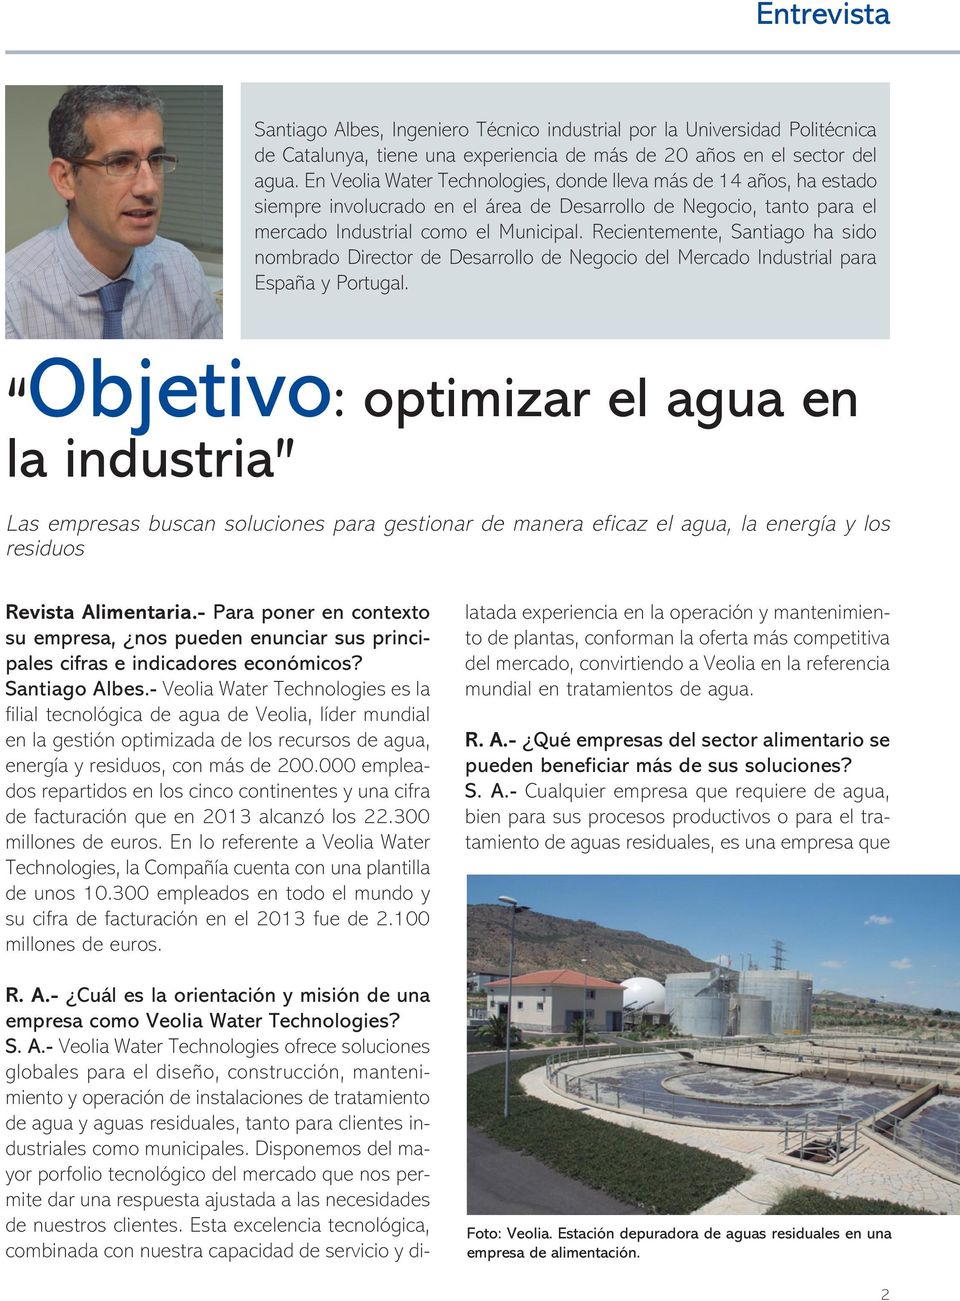 Recientemente, Santiago ha sido nombrado Director de Desarrollo de Negocio del Mercado Industrial para España y Portugal.